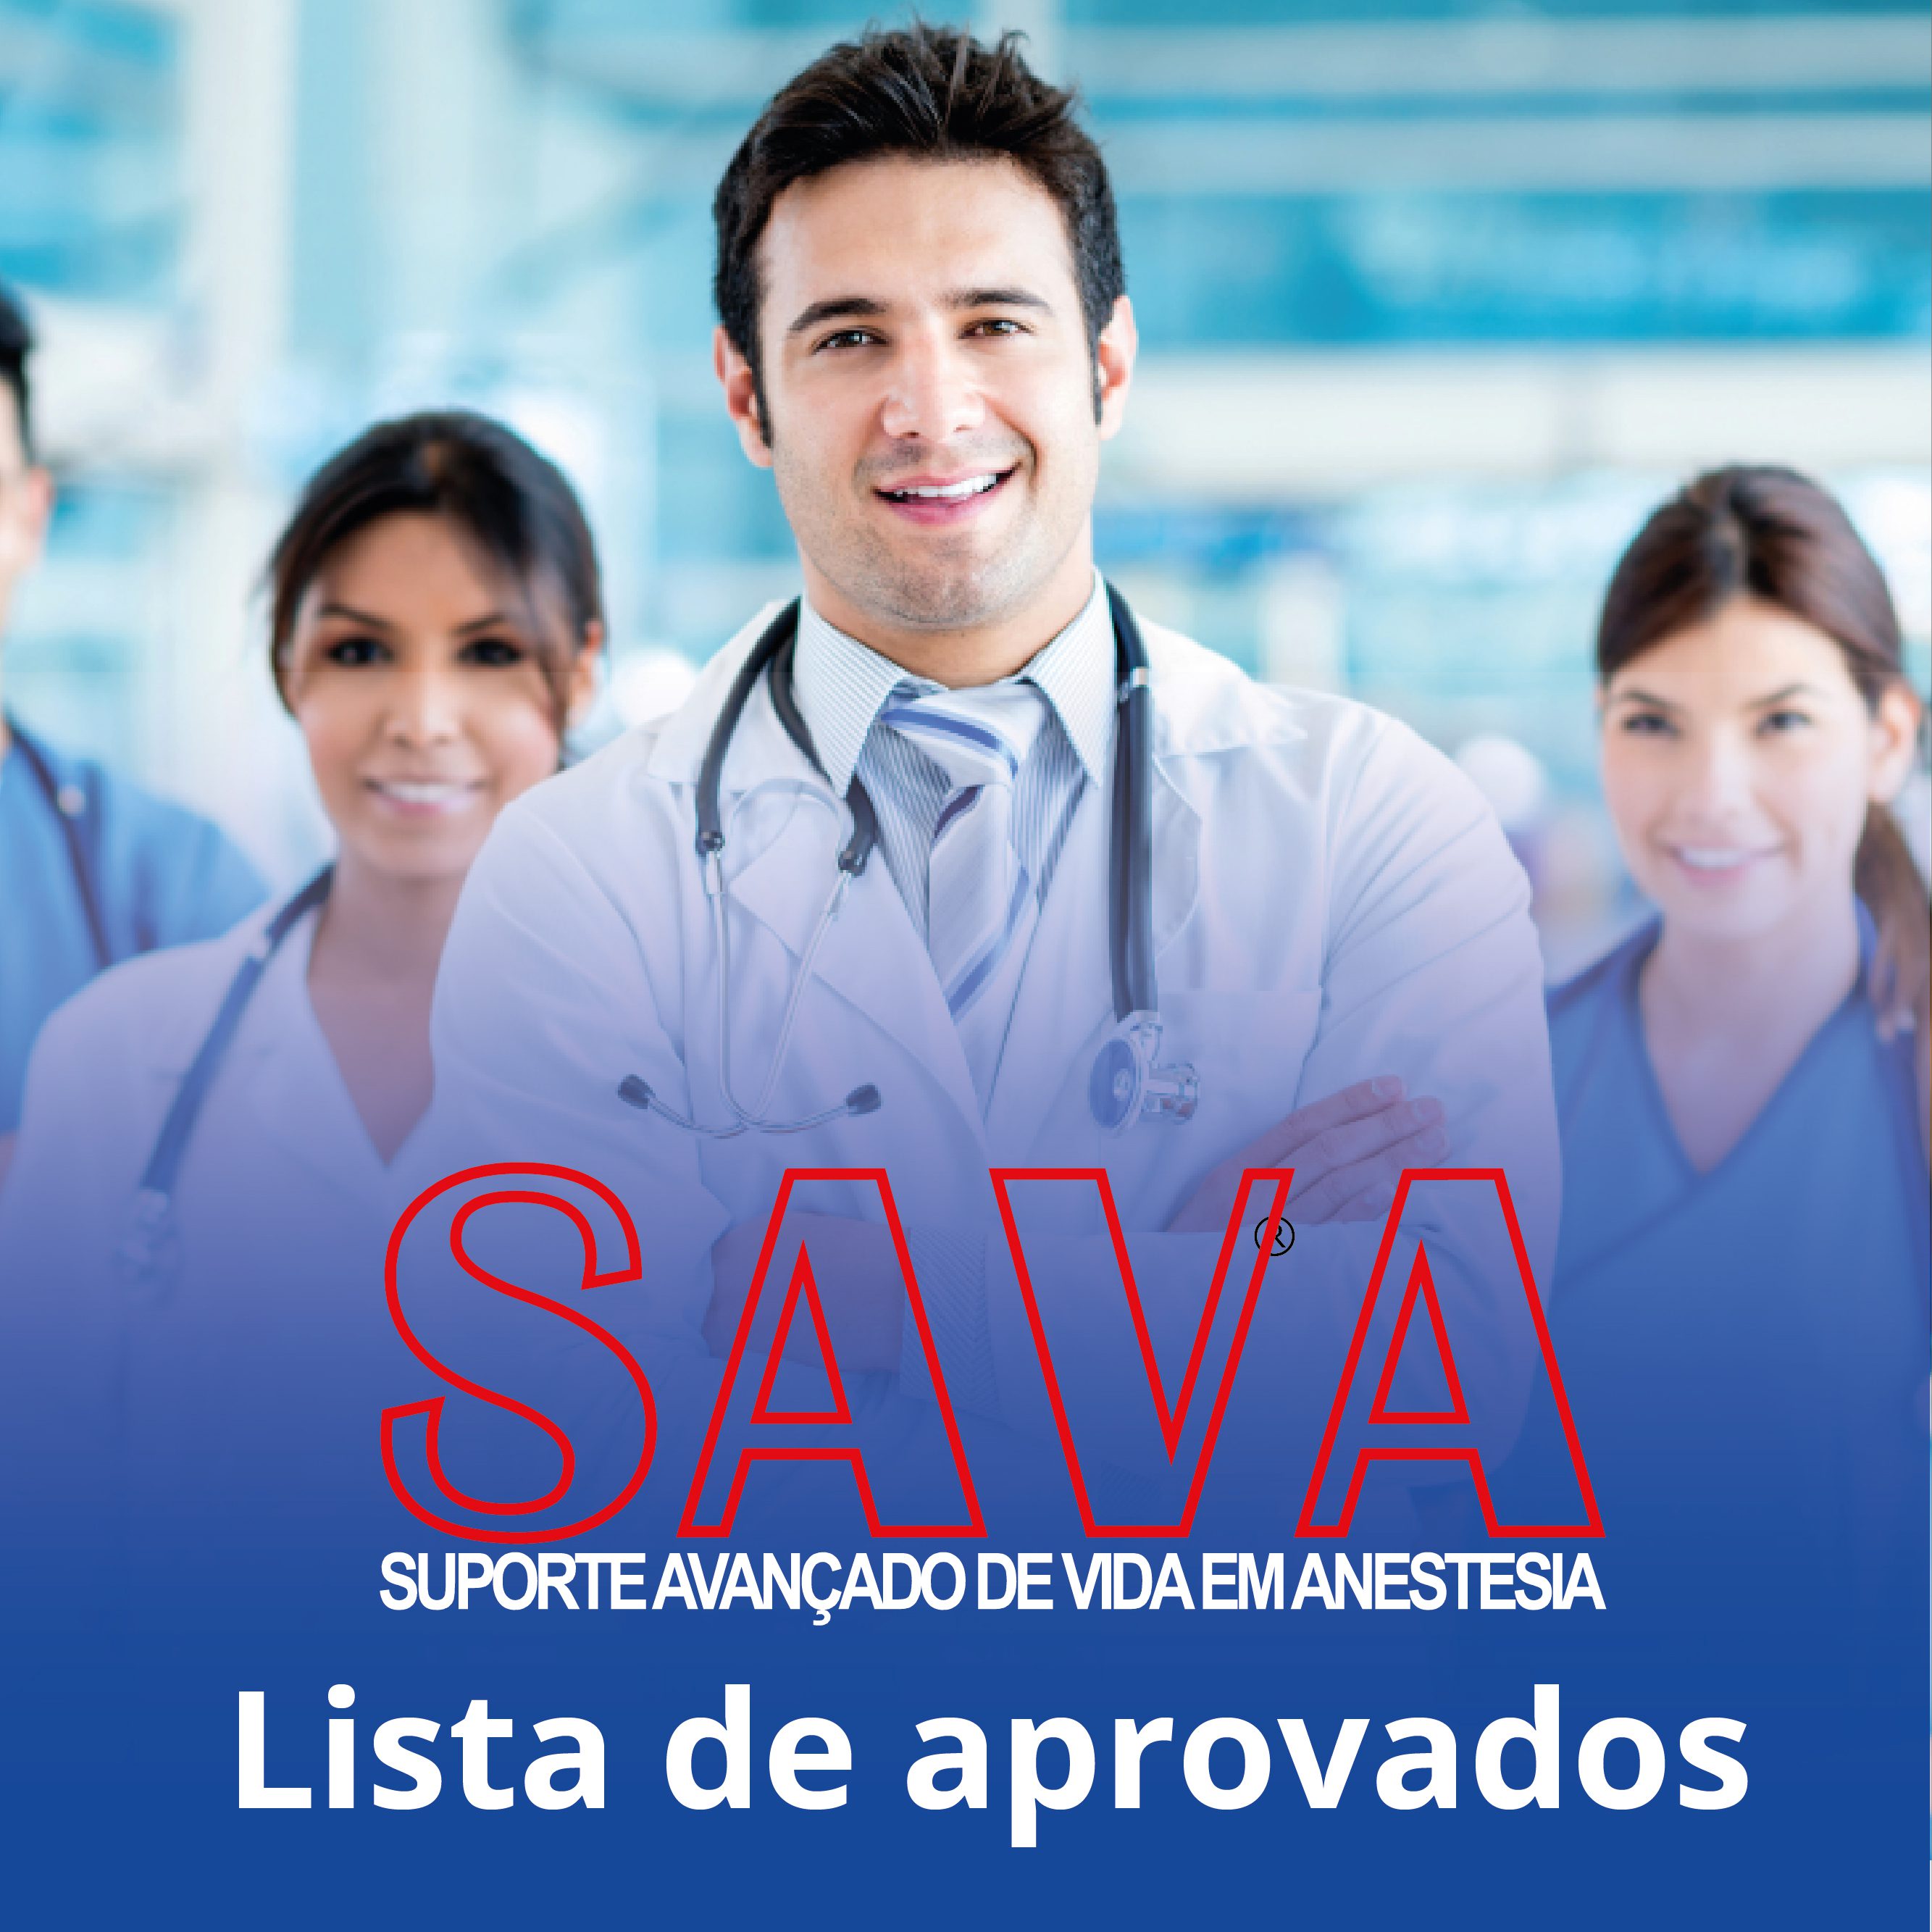 Confira os aprovados no SAVA realizado em Salvador – BA